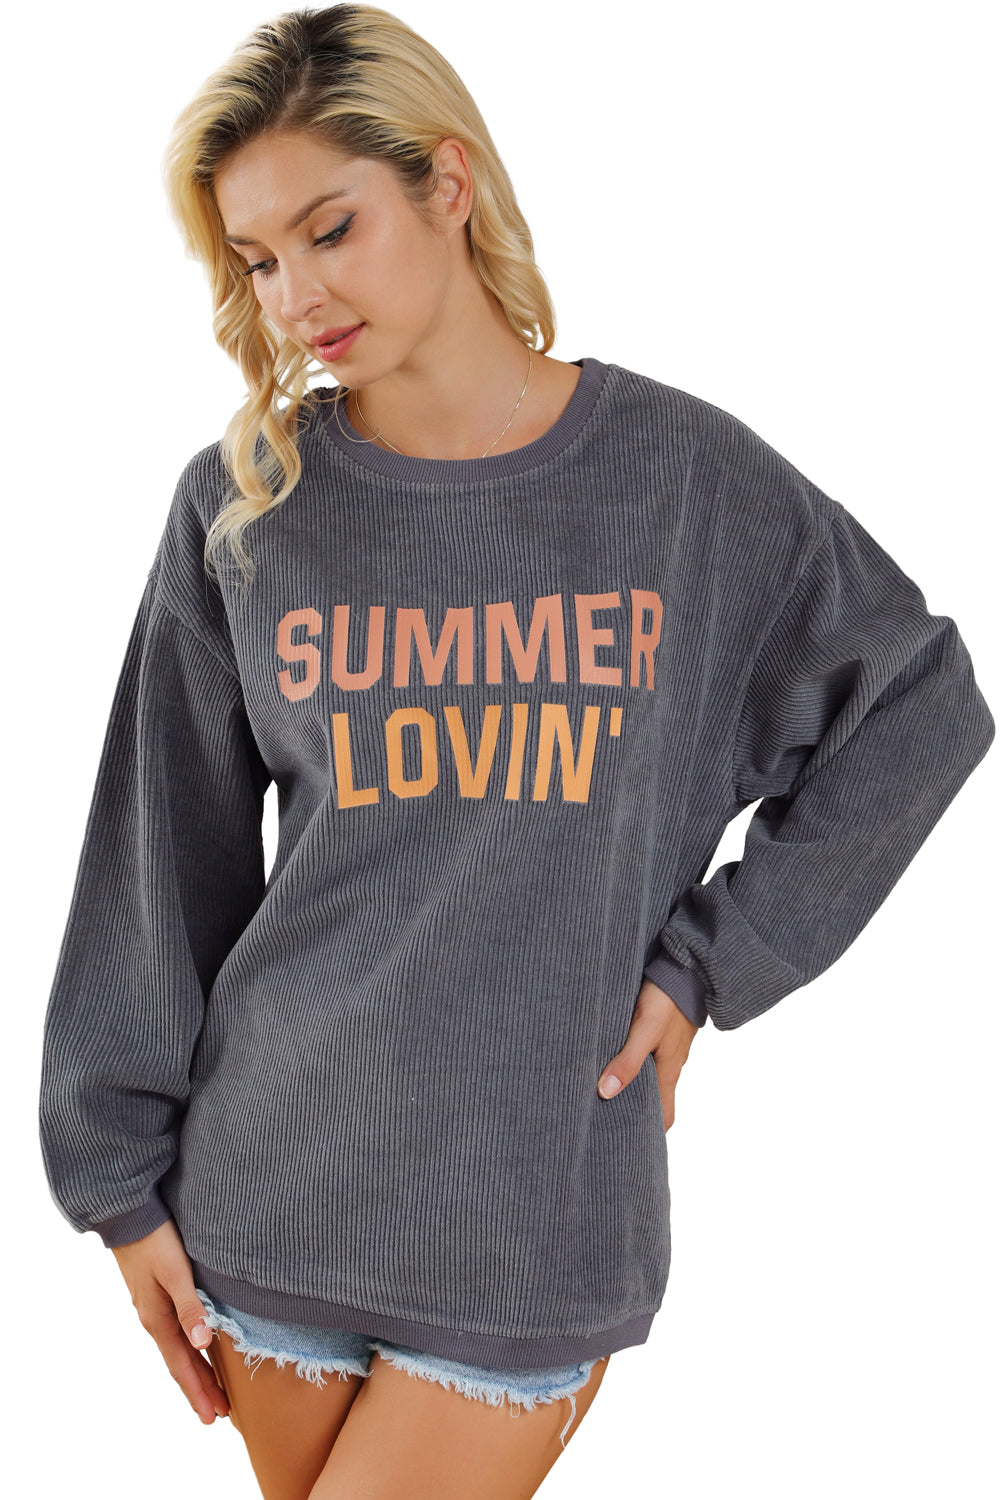 Sweat-shirt gris texturé à motif graphique SUMMER LOVIN